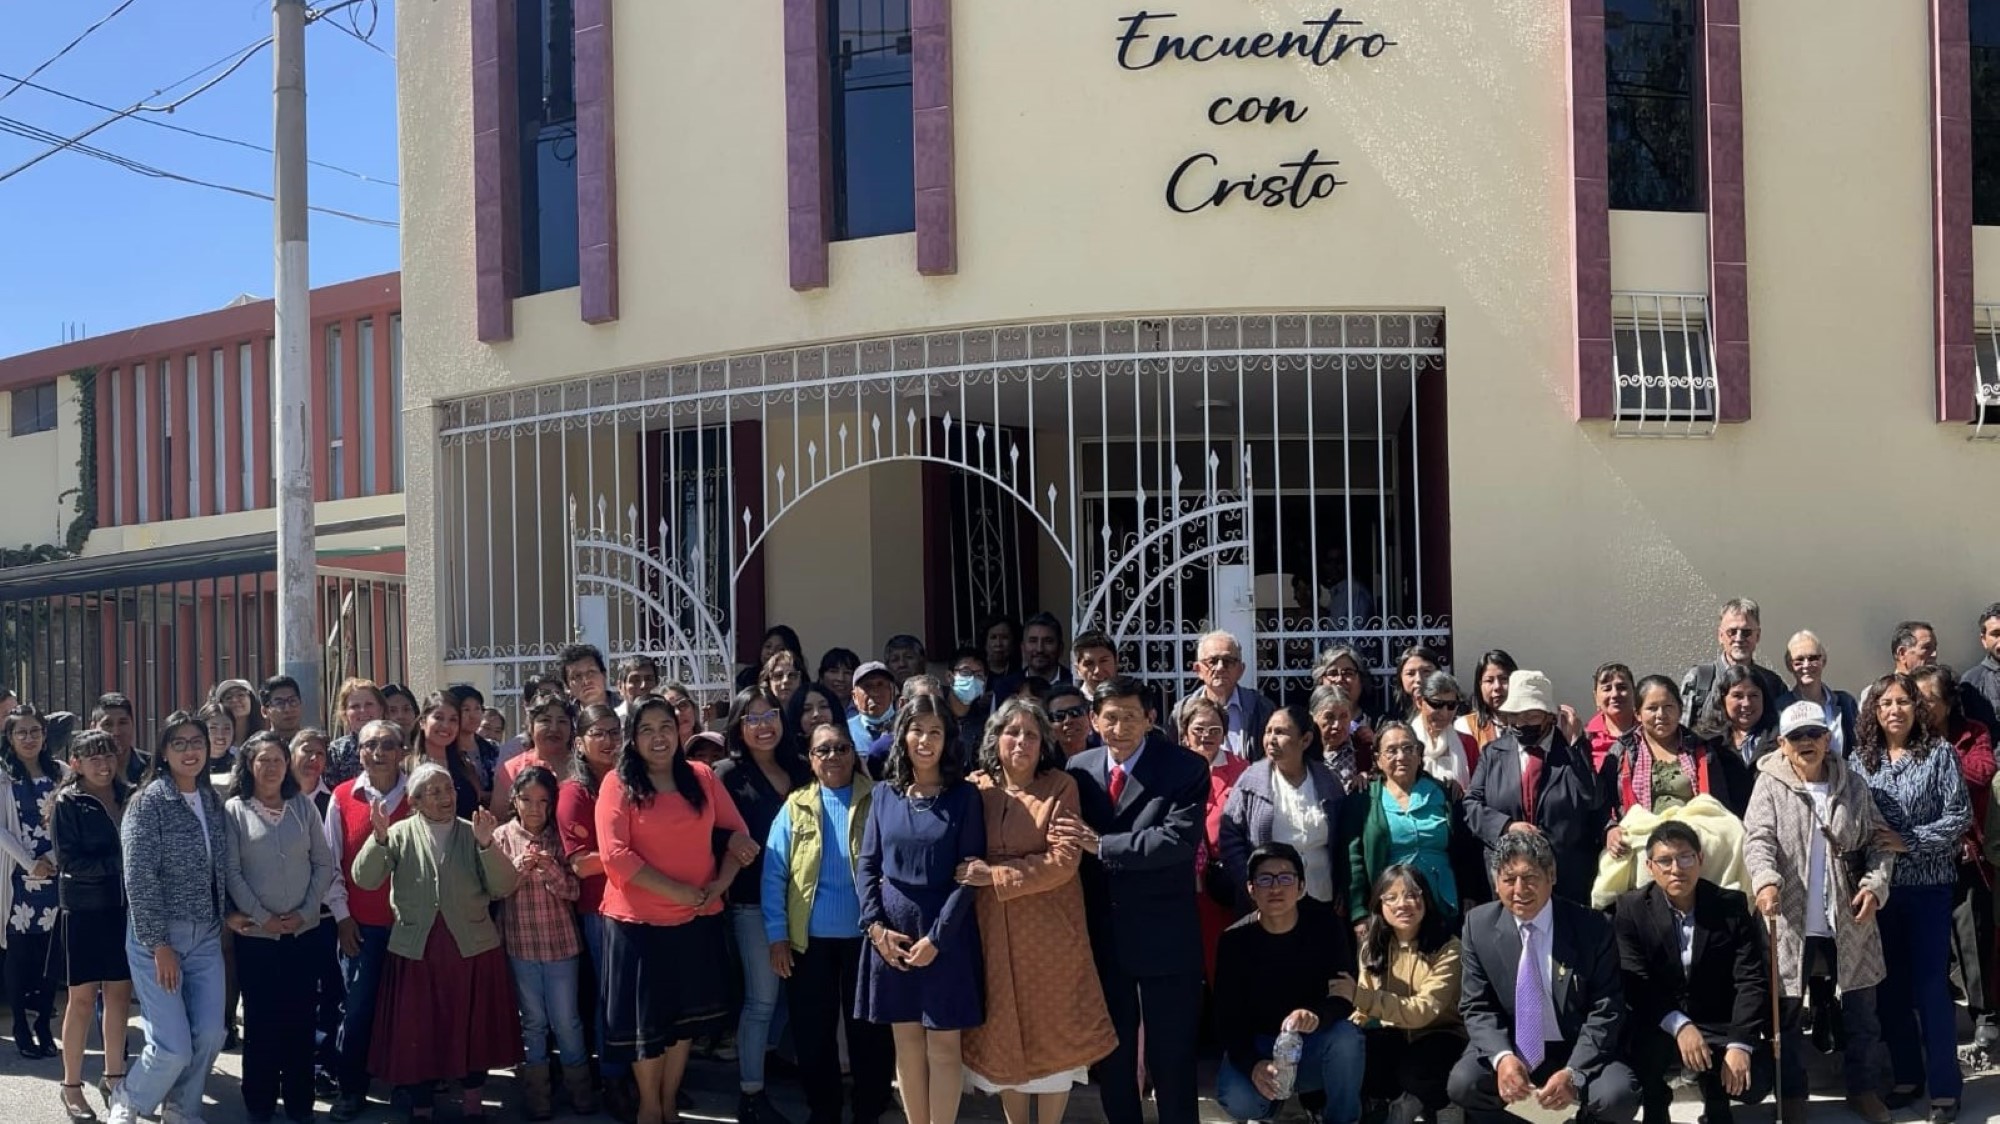 Kirken Encuentro con Cristo i Arequipa